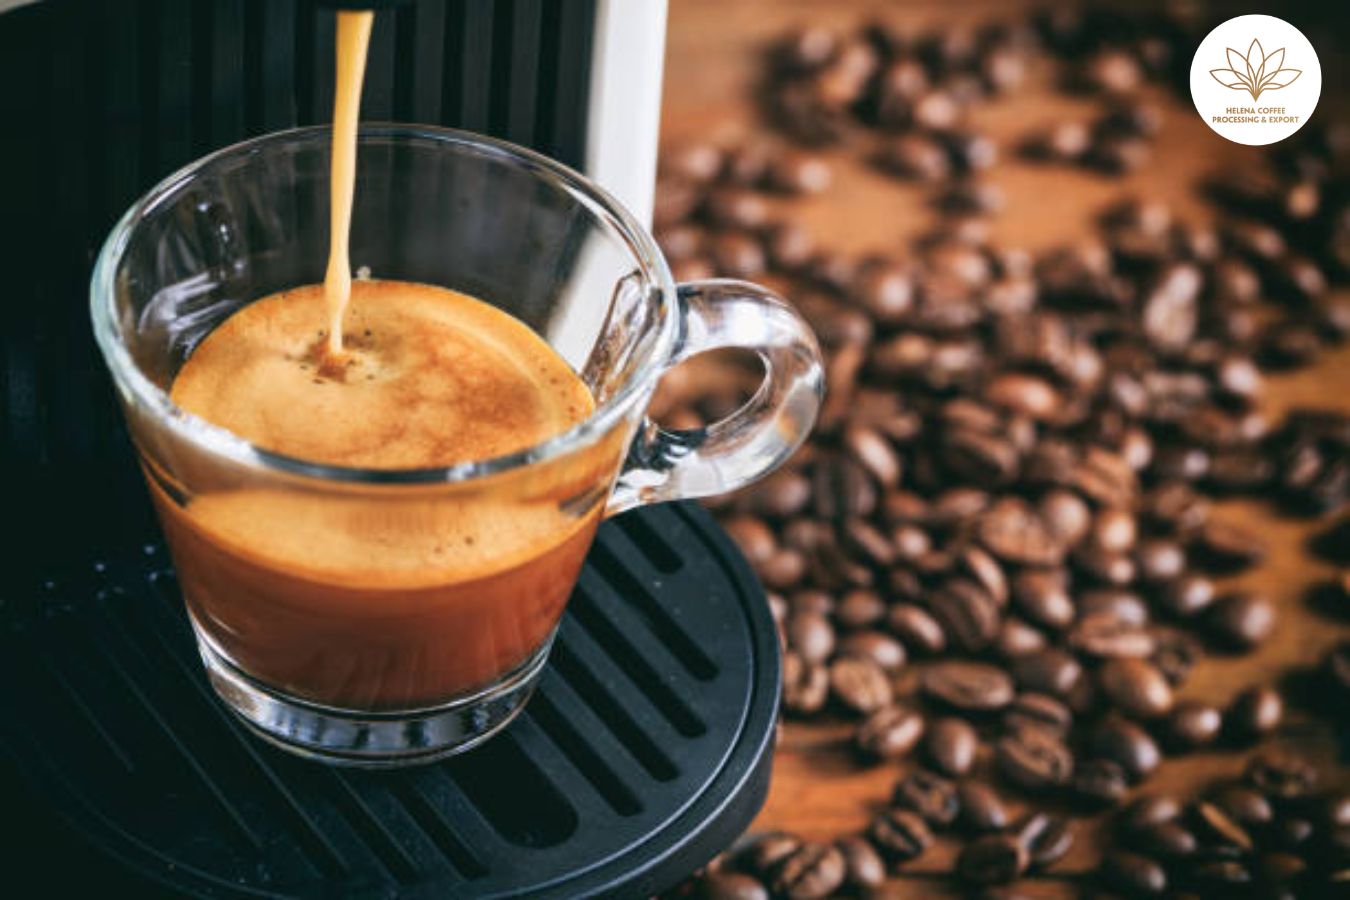 How To Descale An Espresso Machine